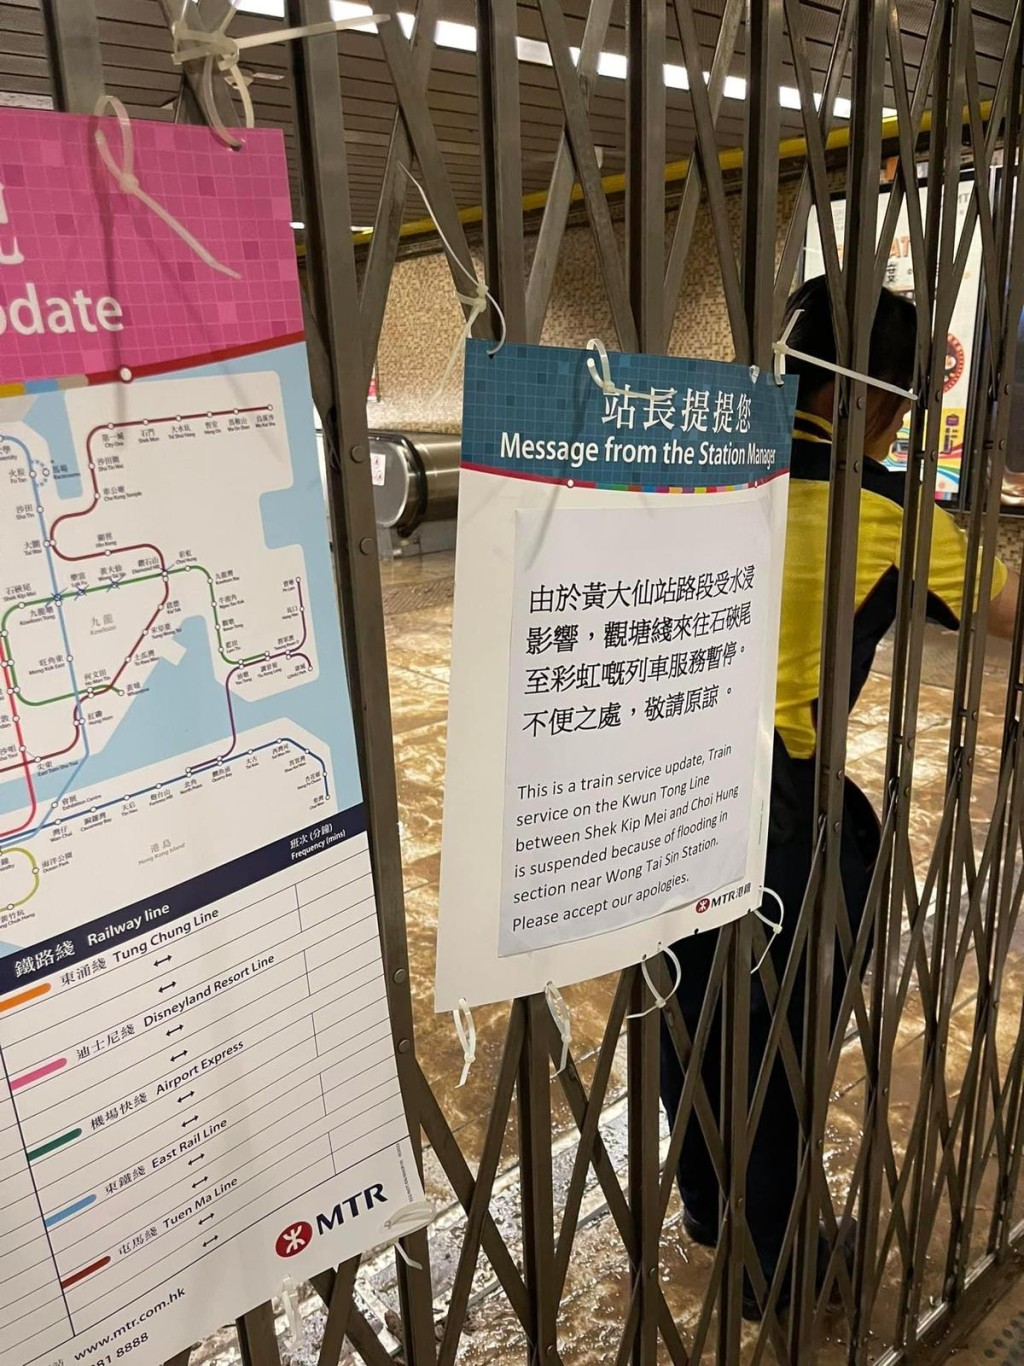 观塘綫来往石硖尾至彩虹的列车服务现时暂停服务。网上图片